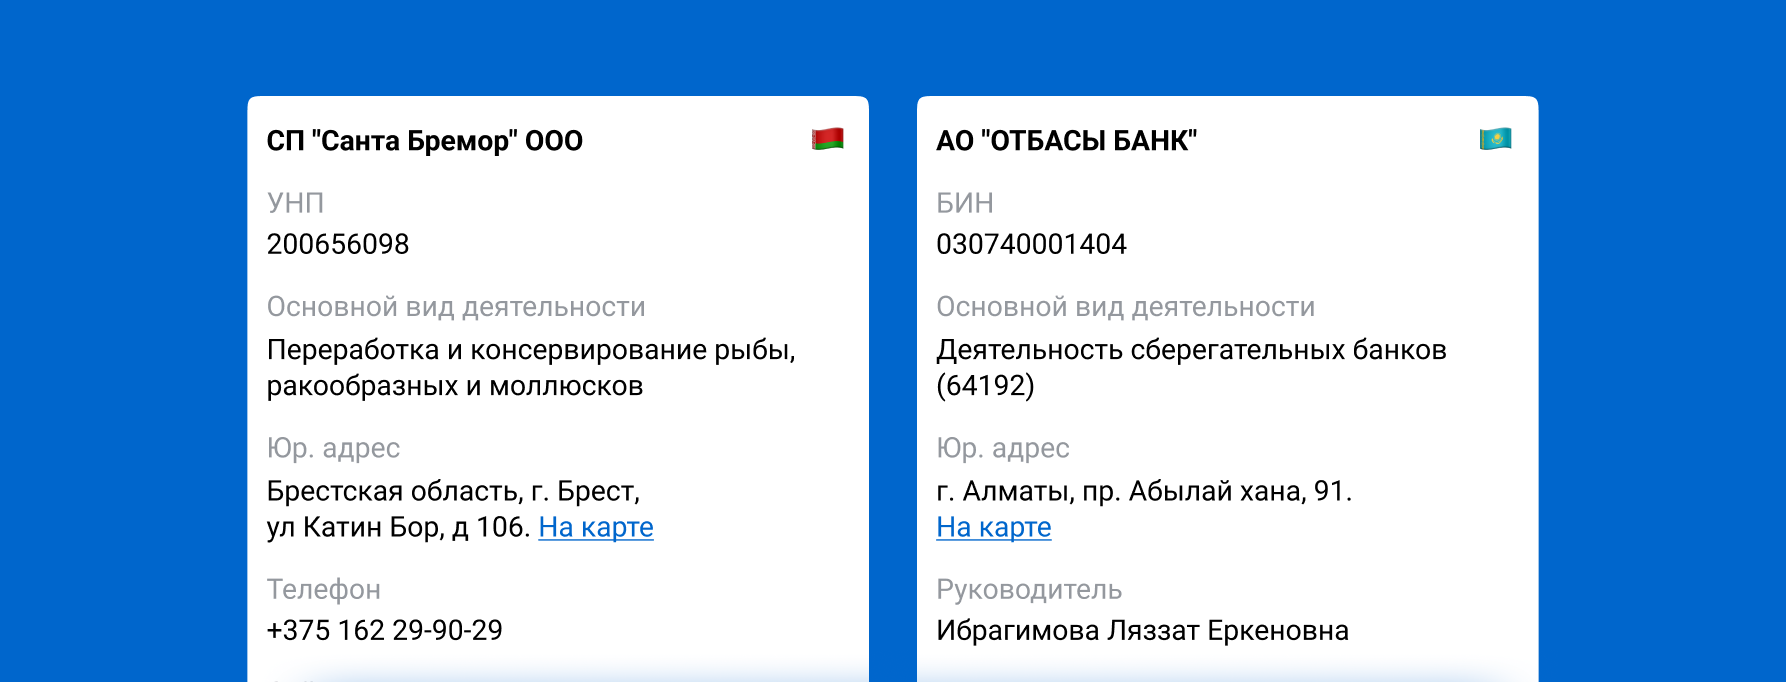 Покажем сведения о юрлицах Беларуси и Казахстана